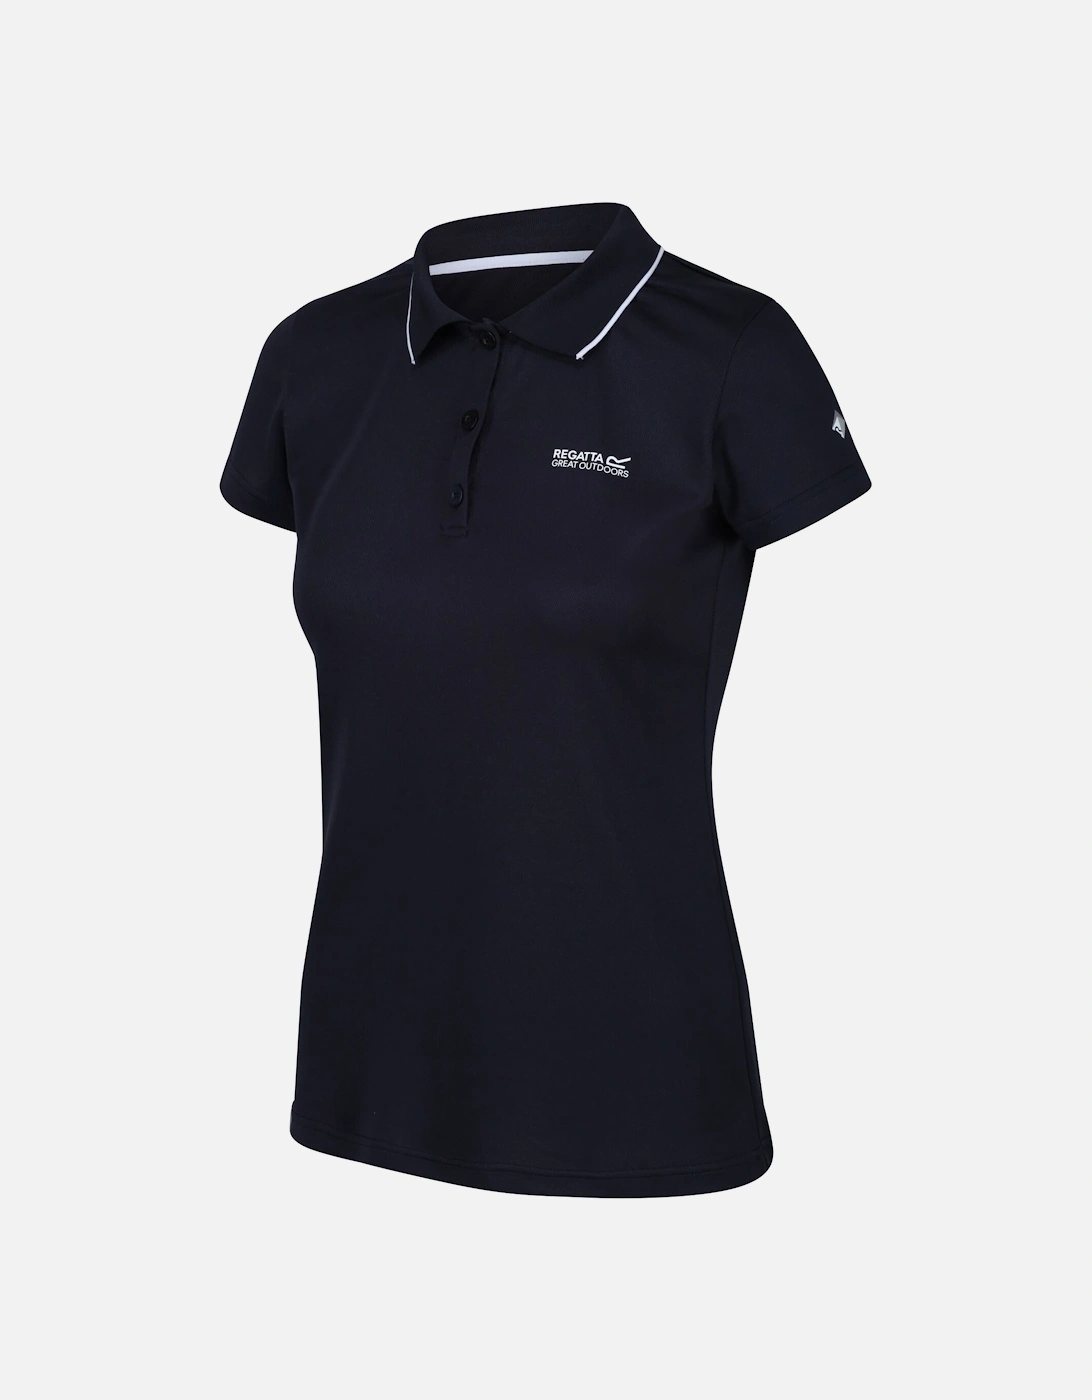 Womens/Ladies Maverick V Polo Shirt